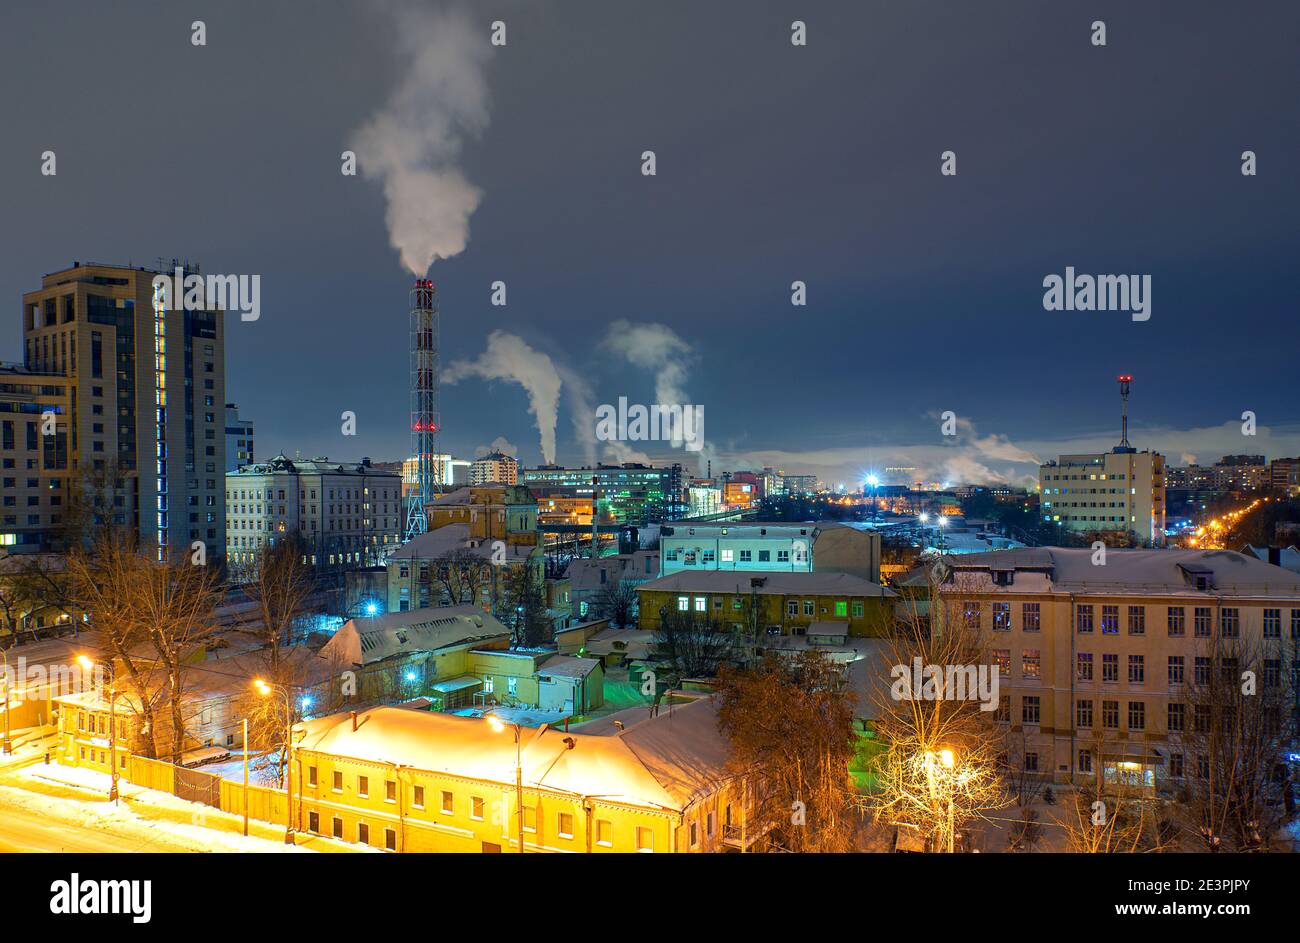 Paysage urbain de quartier à Moscou avec architecture moderne traditionnelle pendant la nuit d'hiver. Tuyaux de chaufferie avec pollution de l'air Banque D'Images